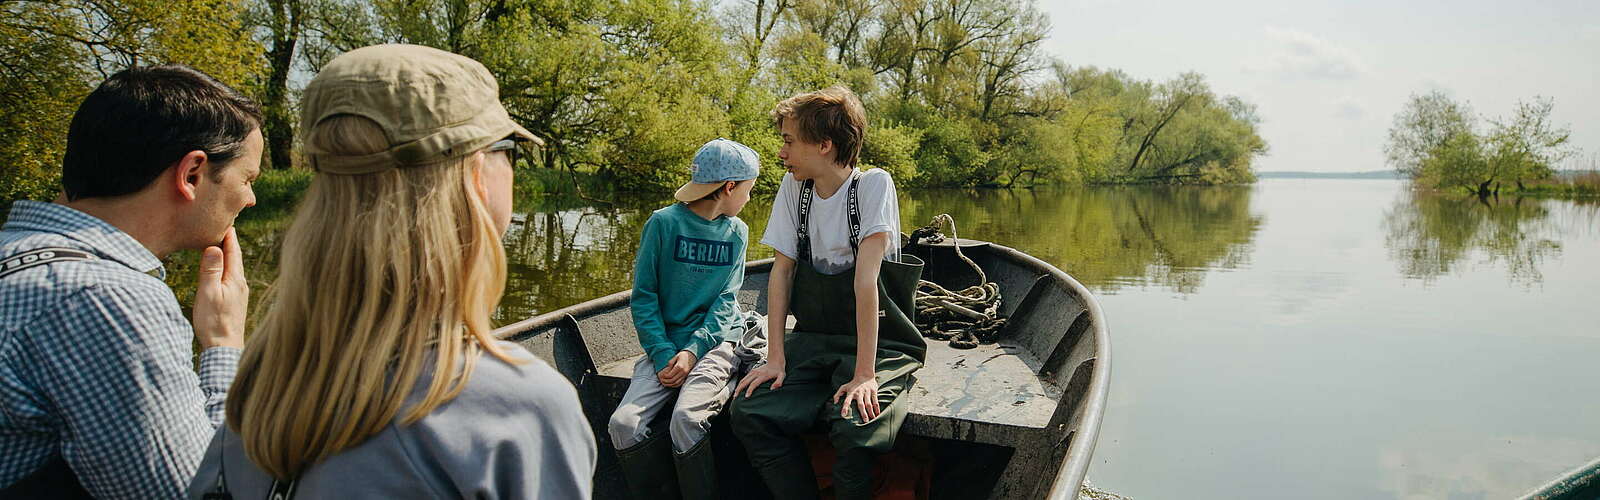 Mit dem Boot auf dem Gülper See,
        
    

        Foto: TMB-Fotoarchiv/Julia Nimke